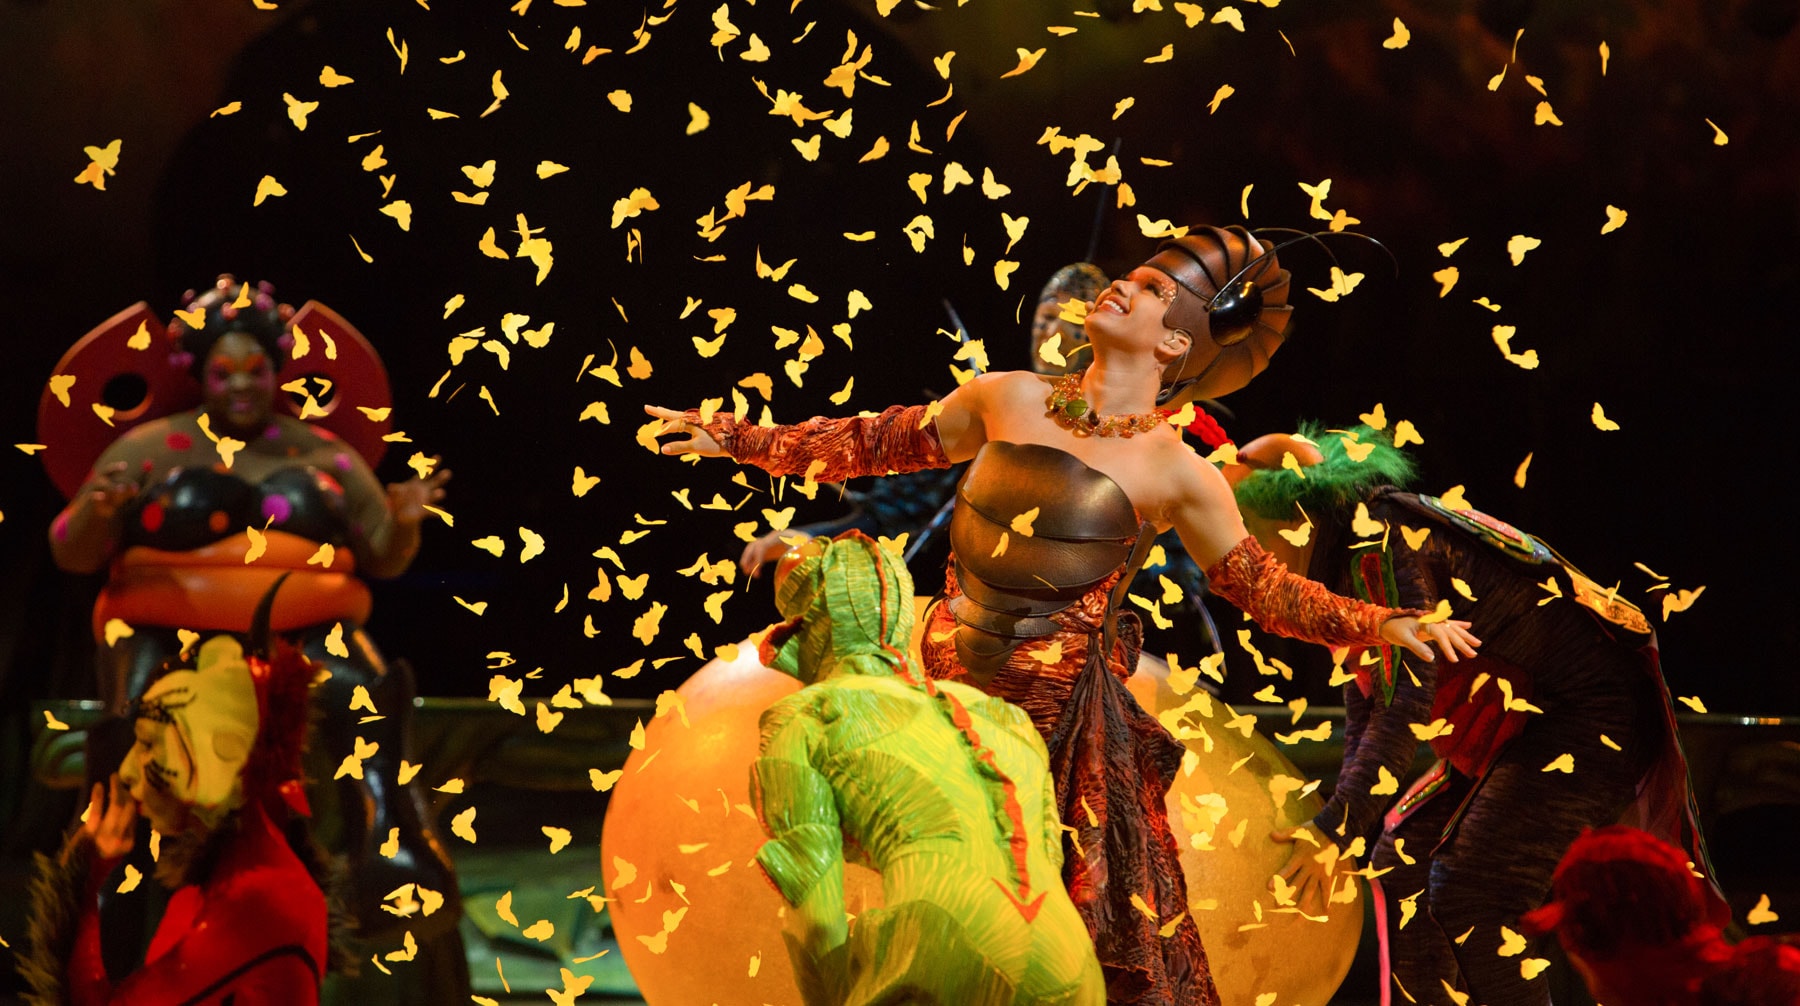 В Москве прошла премьера программы Ovo знаменитого Cirque du Soleil Фото: © Пресс-служба Cirque du Soleil